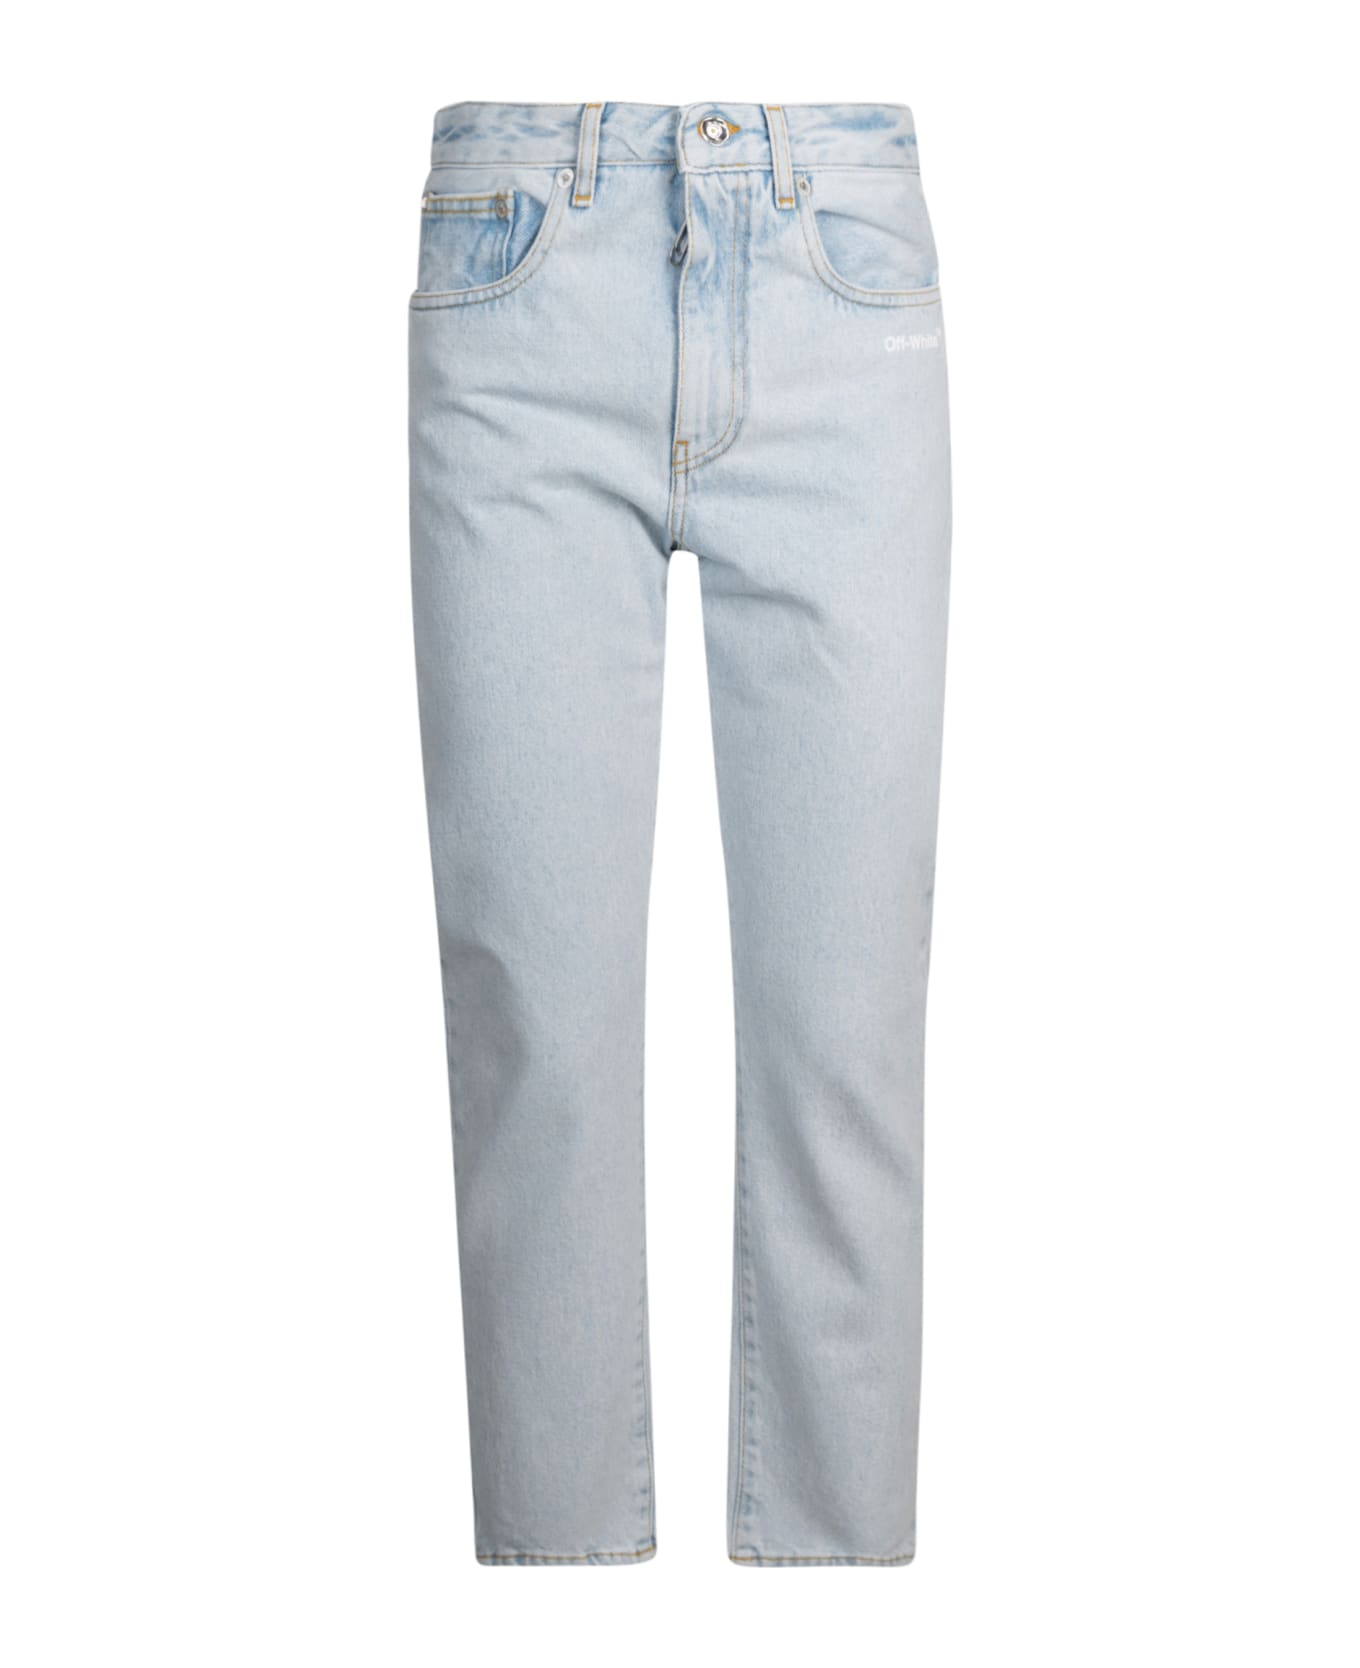 Off-White Diag Straight Leg Jeans - Light Blue/White